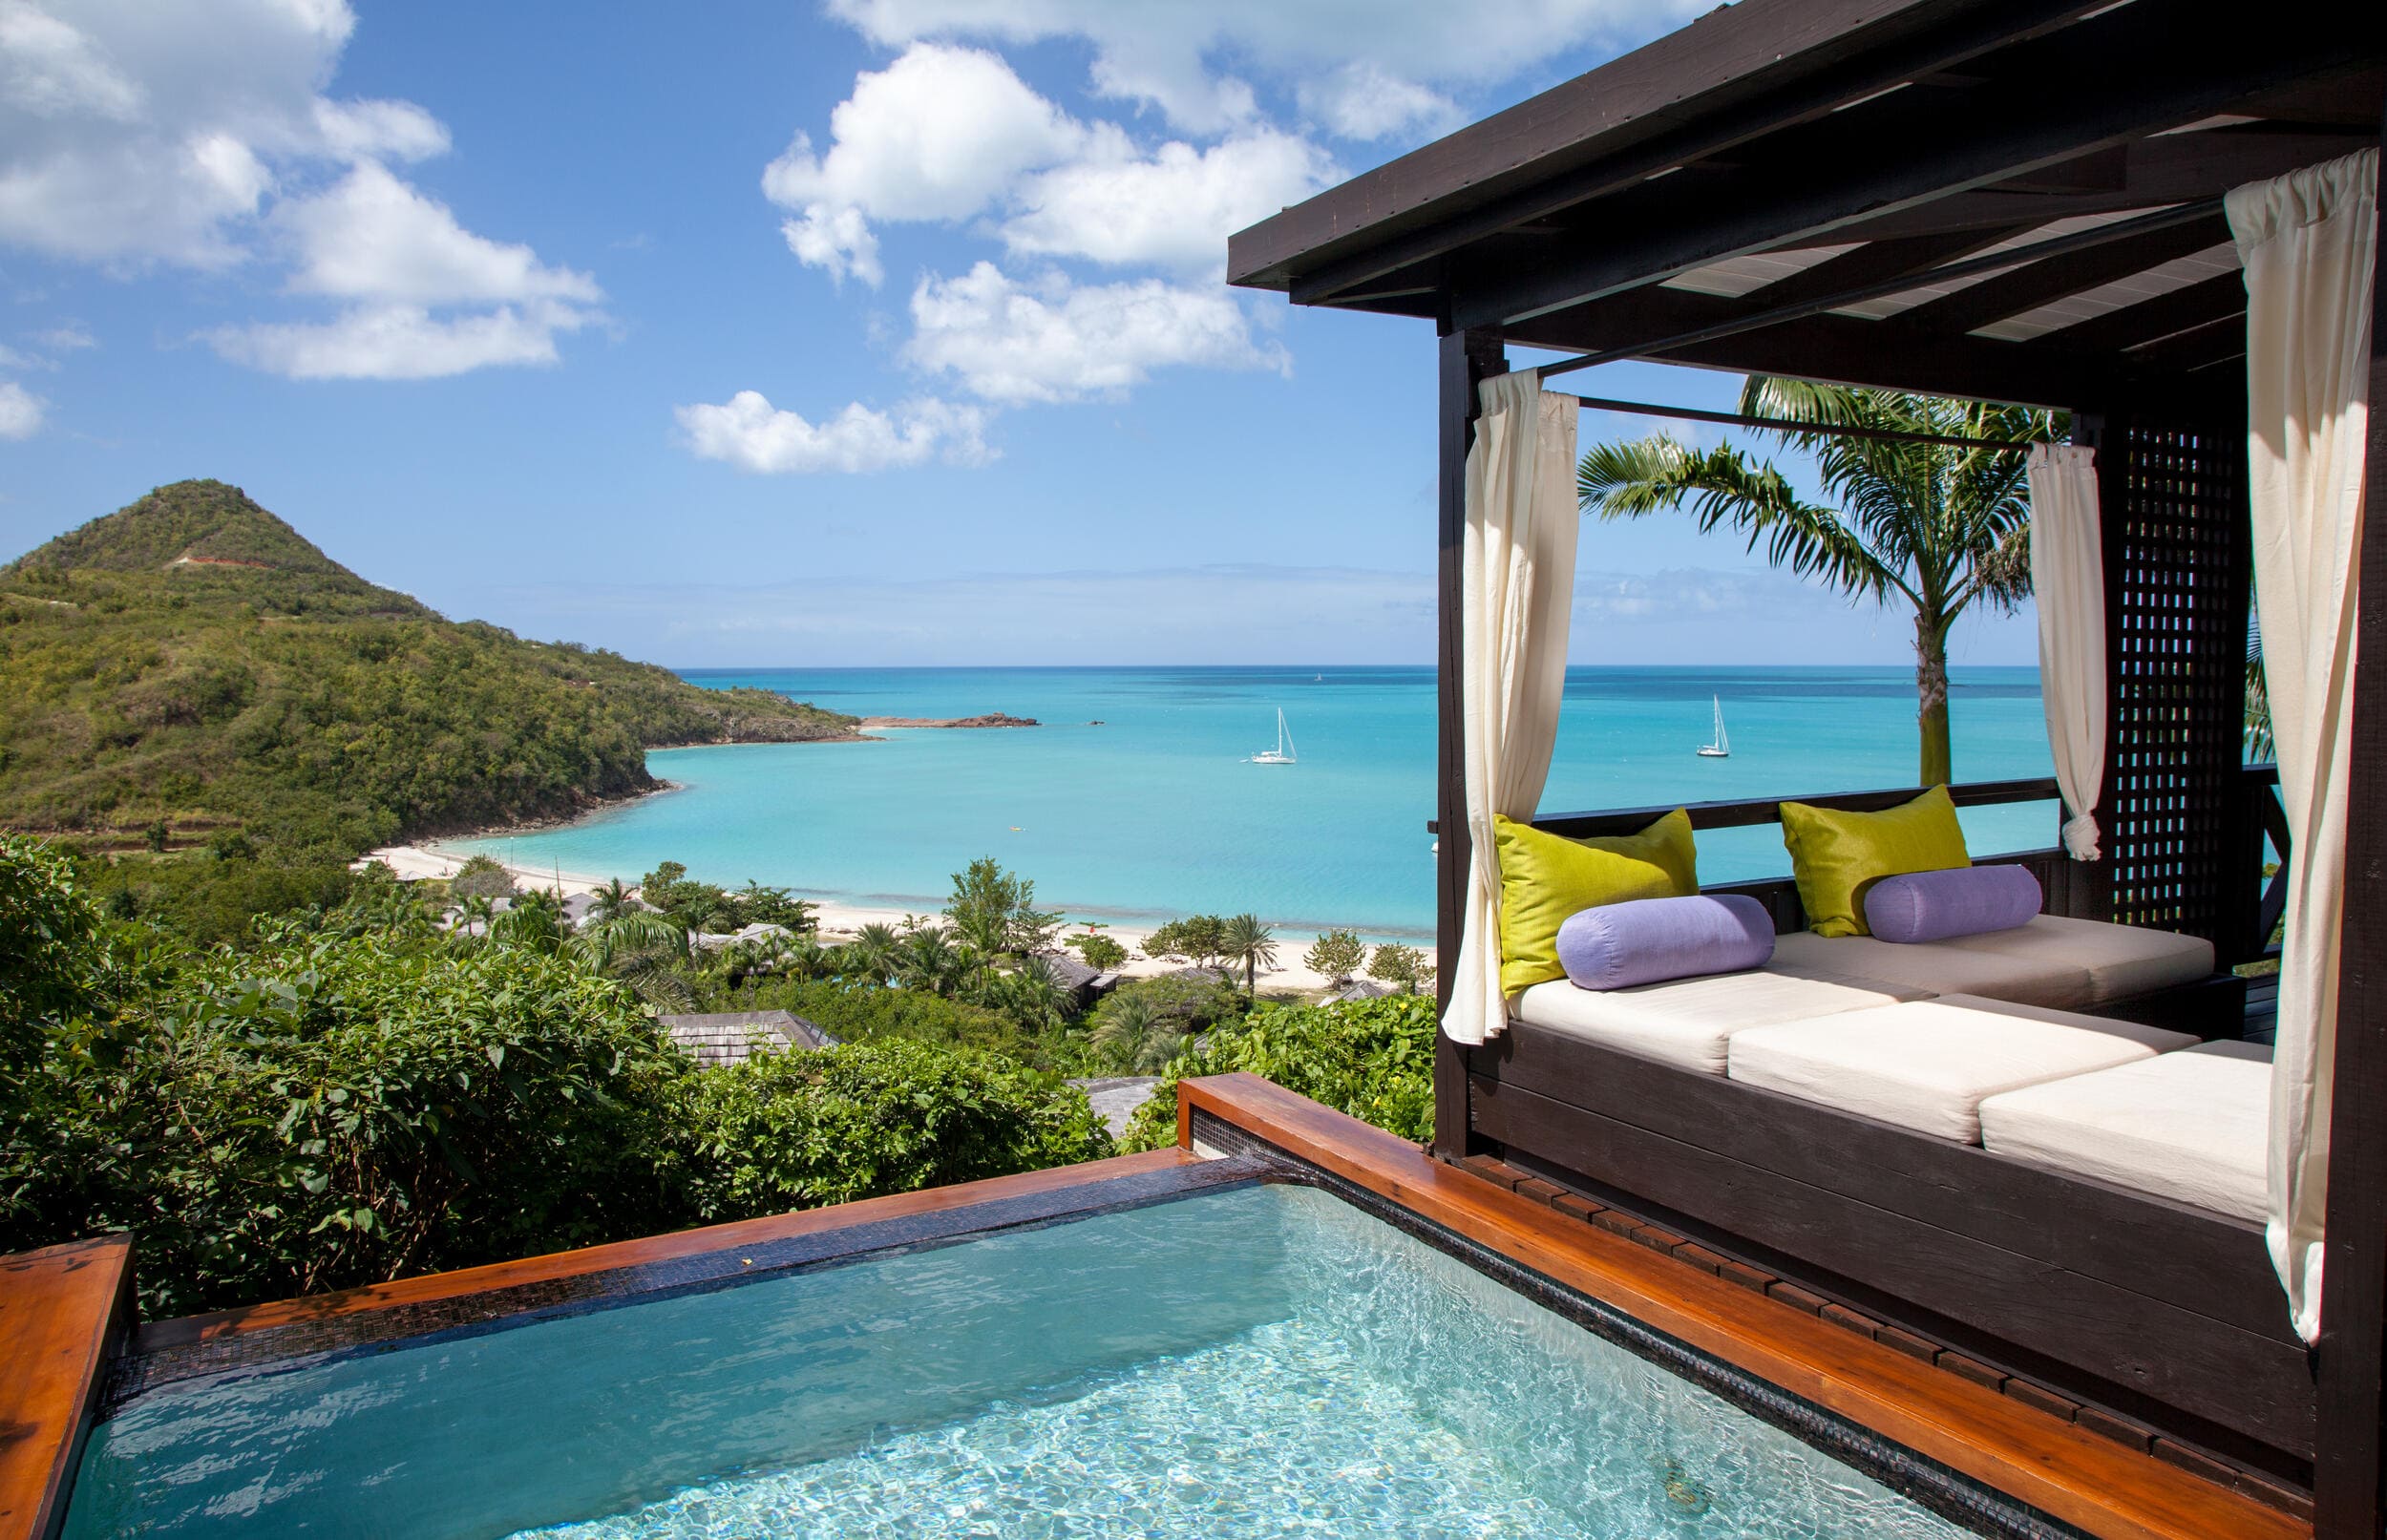 Luxus in traumhafter Umgebung: Auf Antigua und Barbuda eröffnen neue Resorts und Boutique-Hotels der gehobenen Kategorie